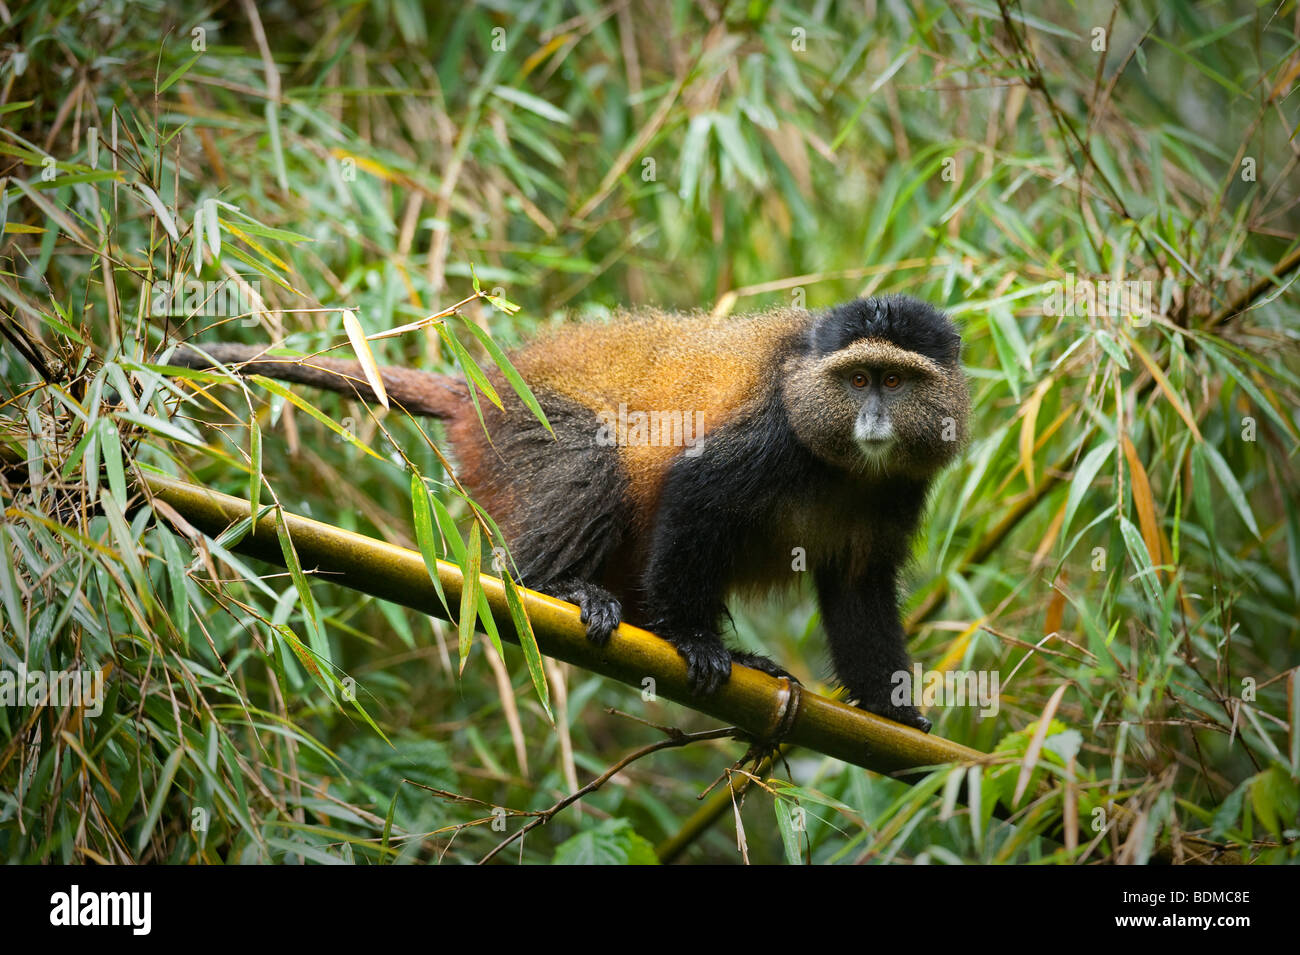 Golden Monkey, Cercopithecus kandti, le parc national des volcans, Rwanda Banque D'Images